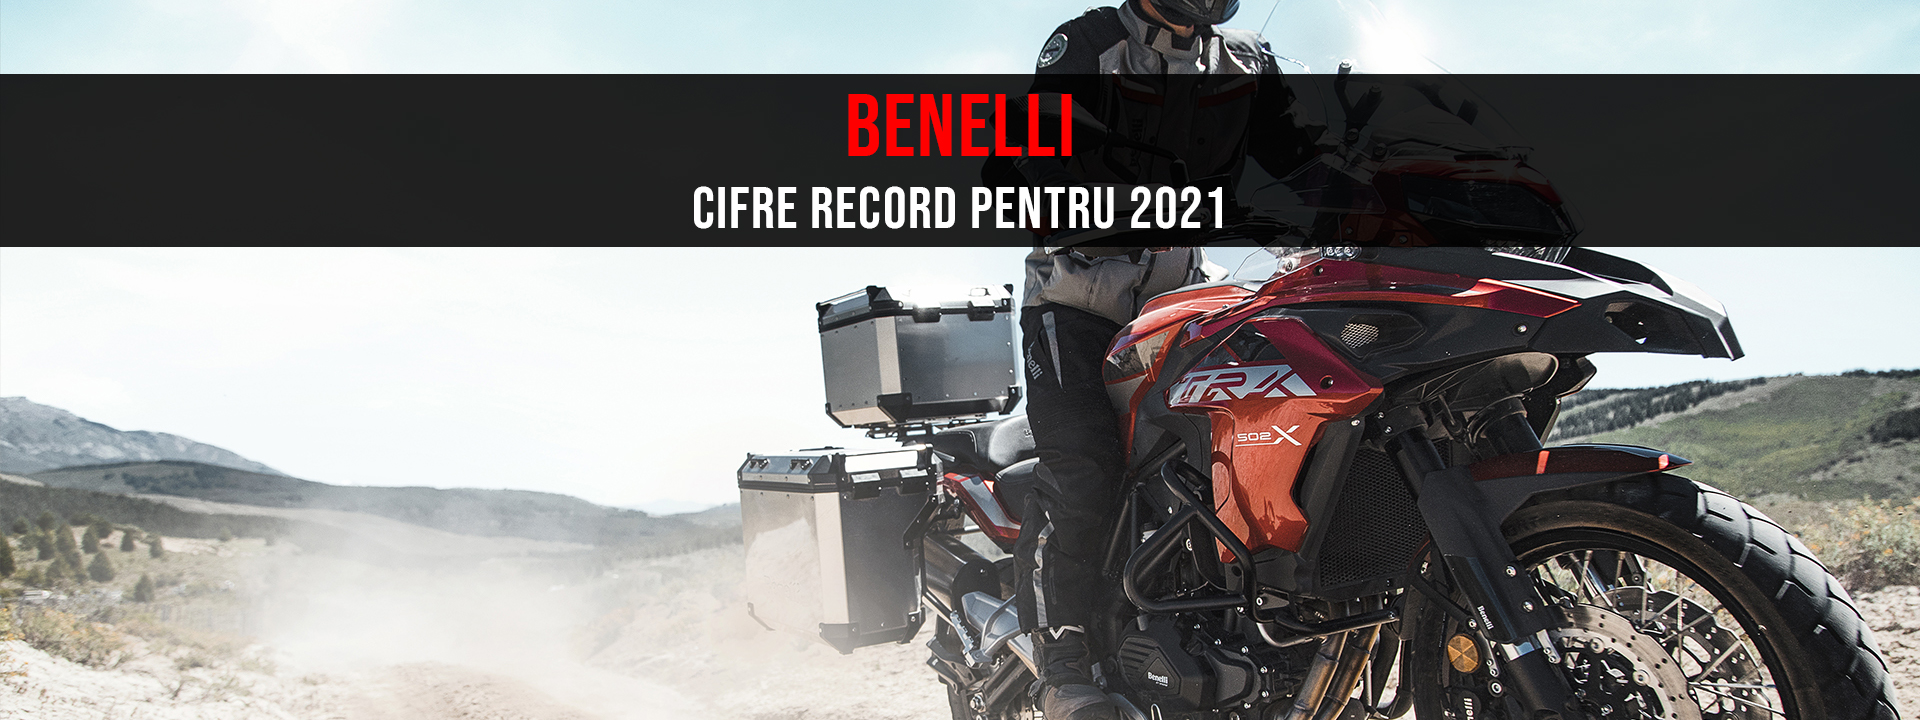 Benelli a bătut recordurile în Italia în 2021